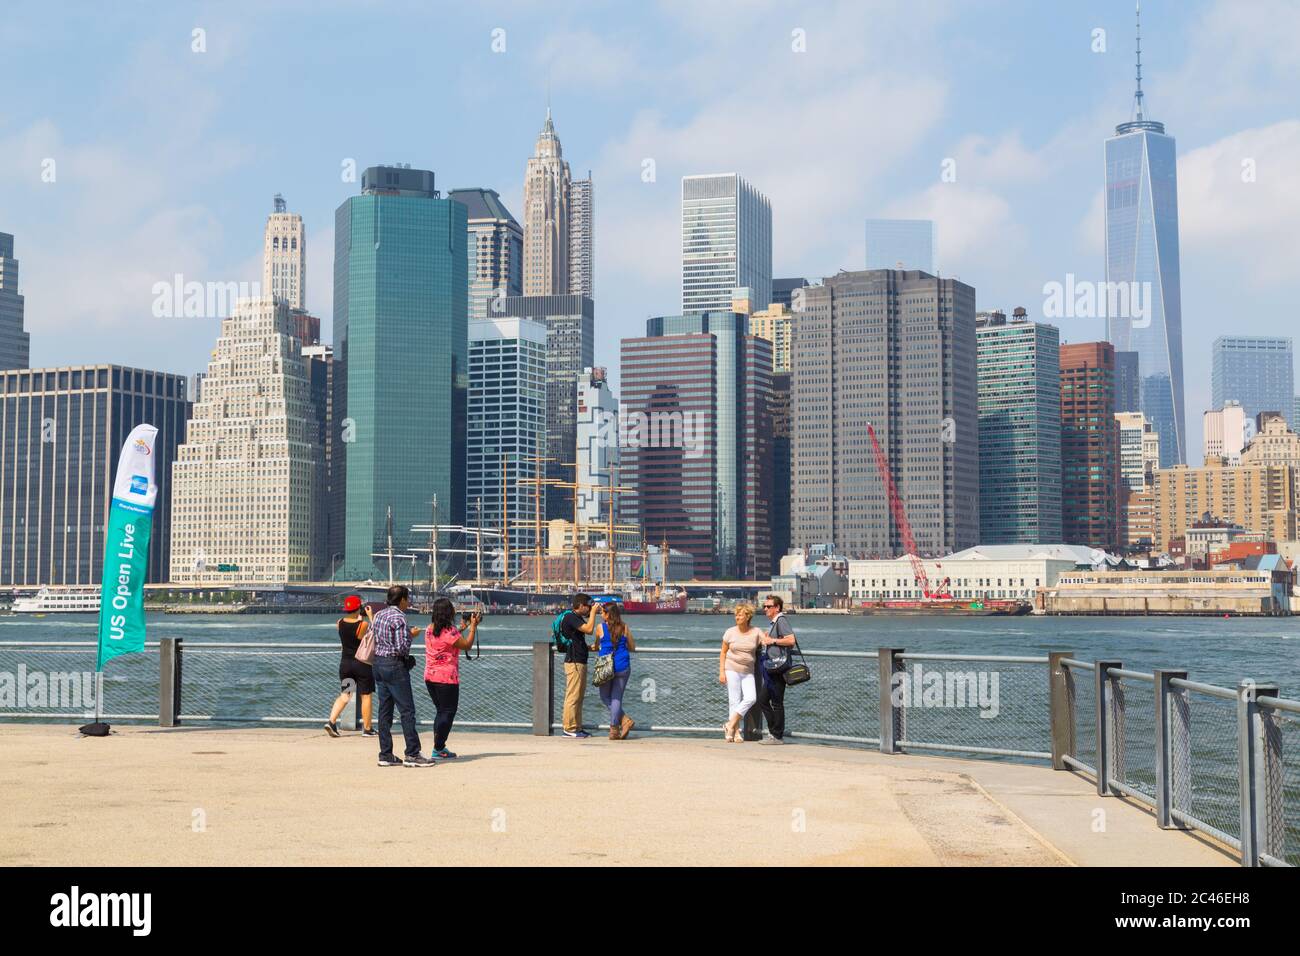 NEW YORK CITY, USA - 31. AUGUST 2014: Menschen, die mit der New York Skyline im Hintergrund fotografieren Stockfoto